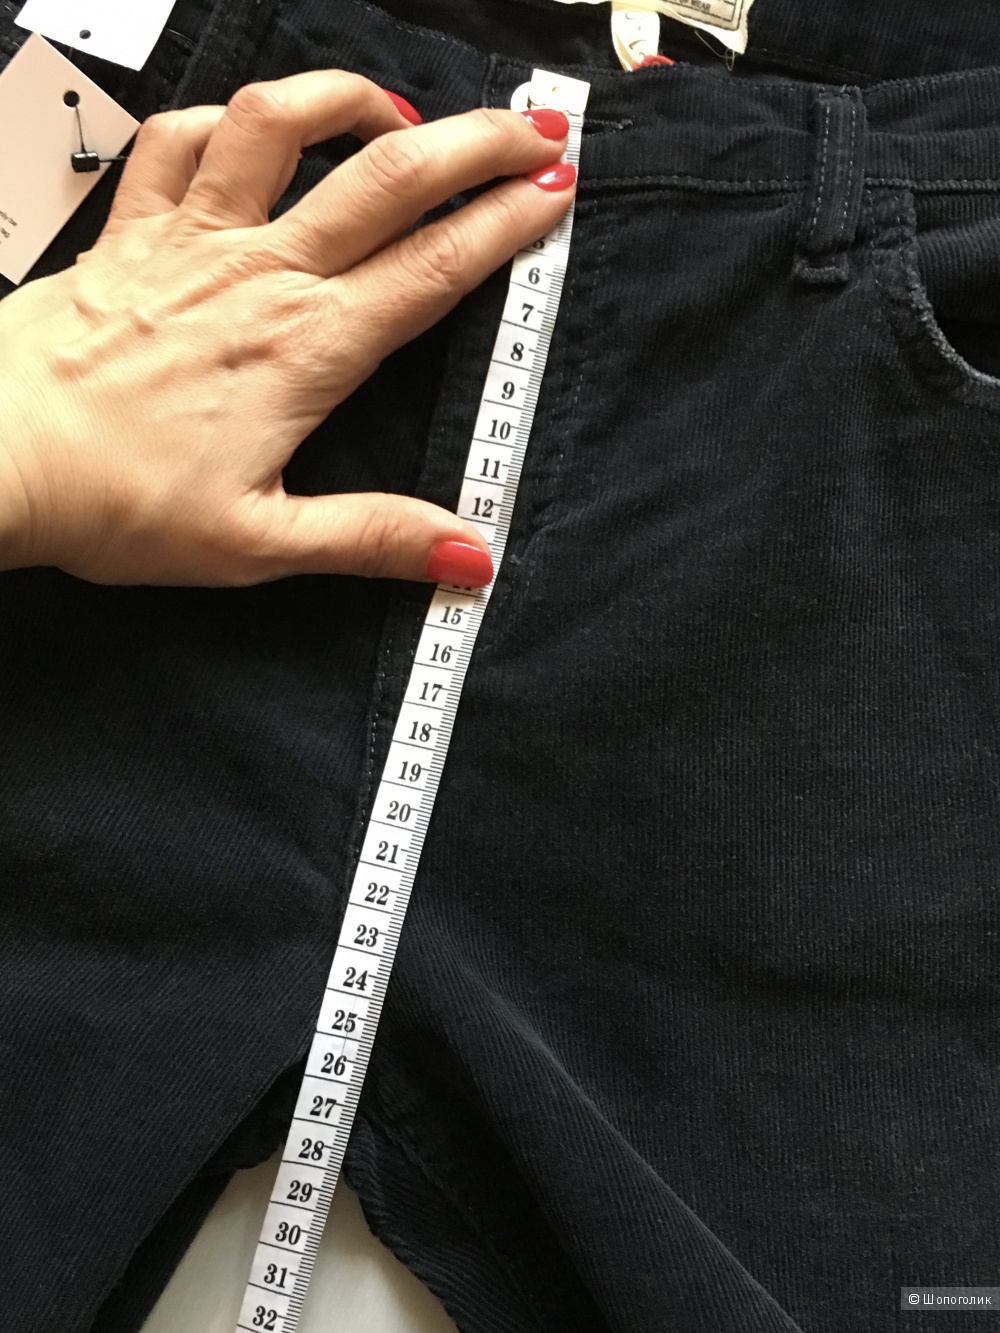 Вельветовые укороченные джинсы-буткаты Current/Elliott, размер 31. Угольно-серые.